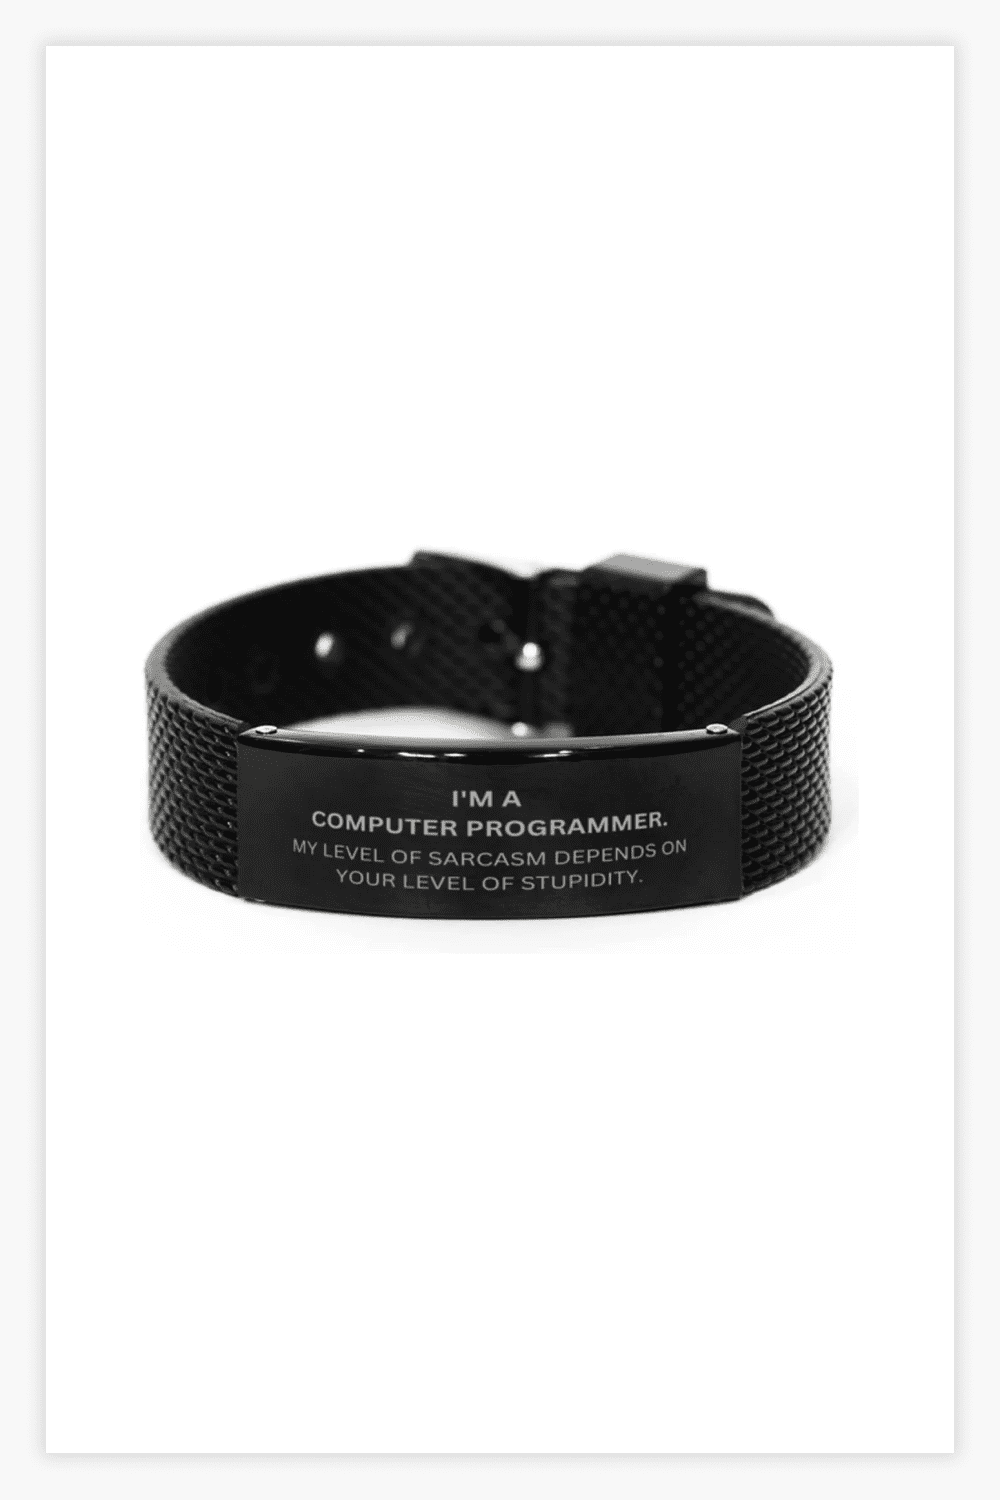 Black bracelet with a white funny inscription on it.